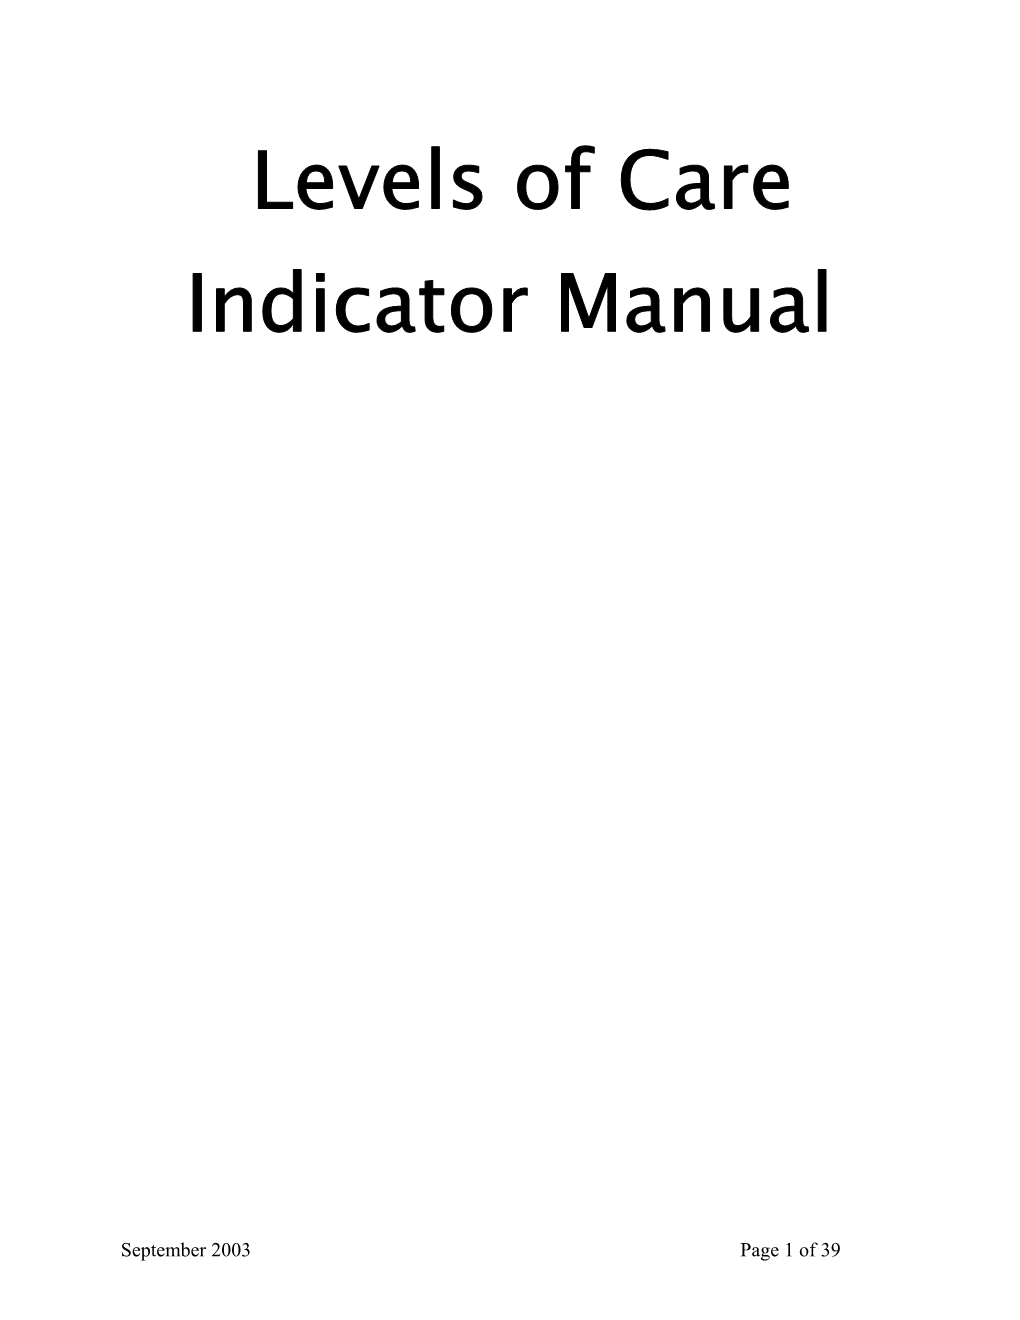 LOC Indicator Manual.June 12